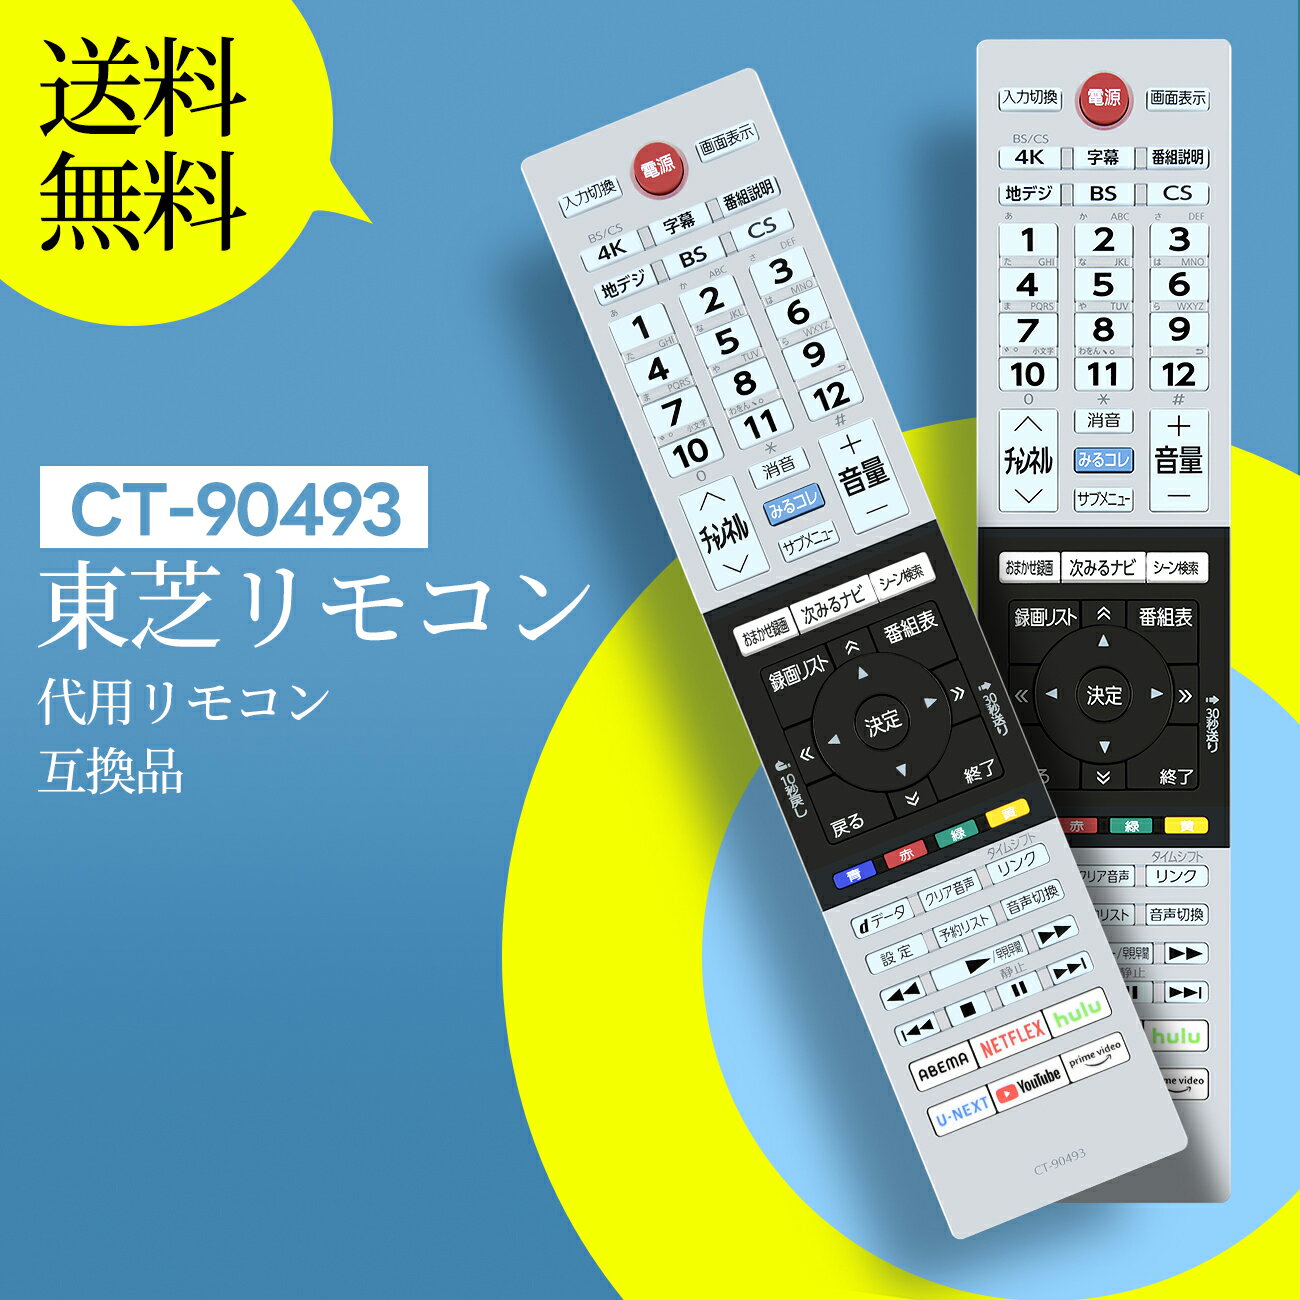 テレビリモコン CT-90493P for TOSHIBA 東芝 レグザ リモコン 東芝テレビリモコン regza リモコン 43C350X 50C350X 55C350X 75045579対応 (音声機能なし)